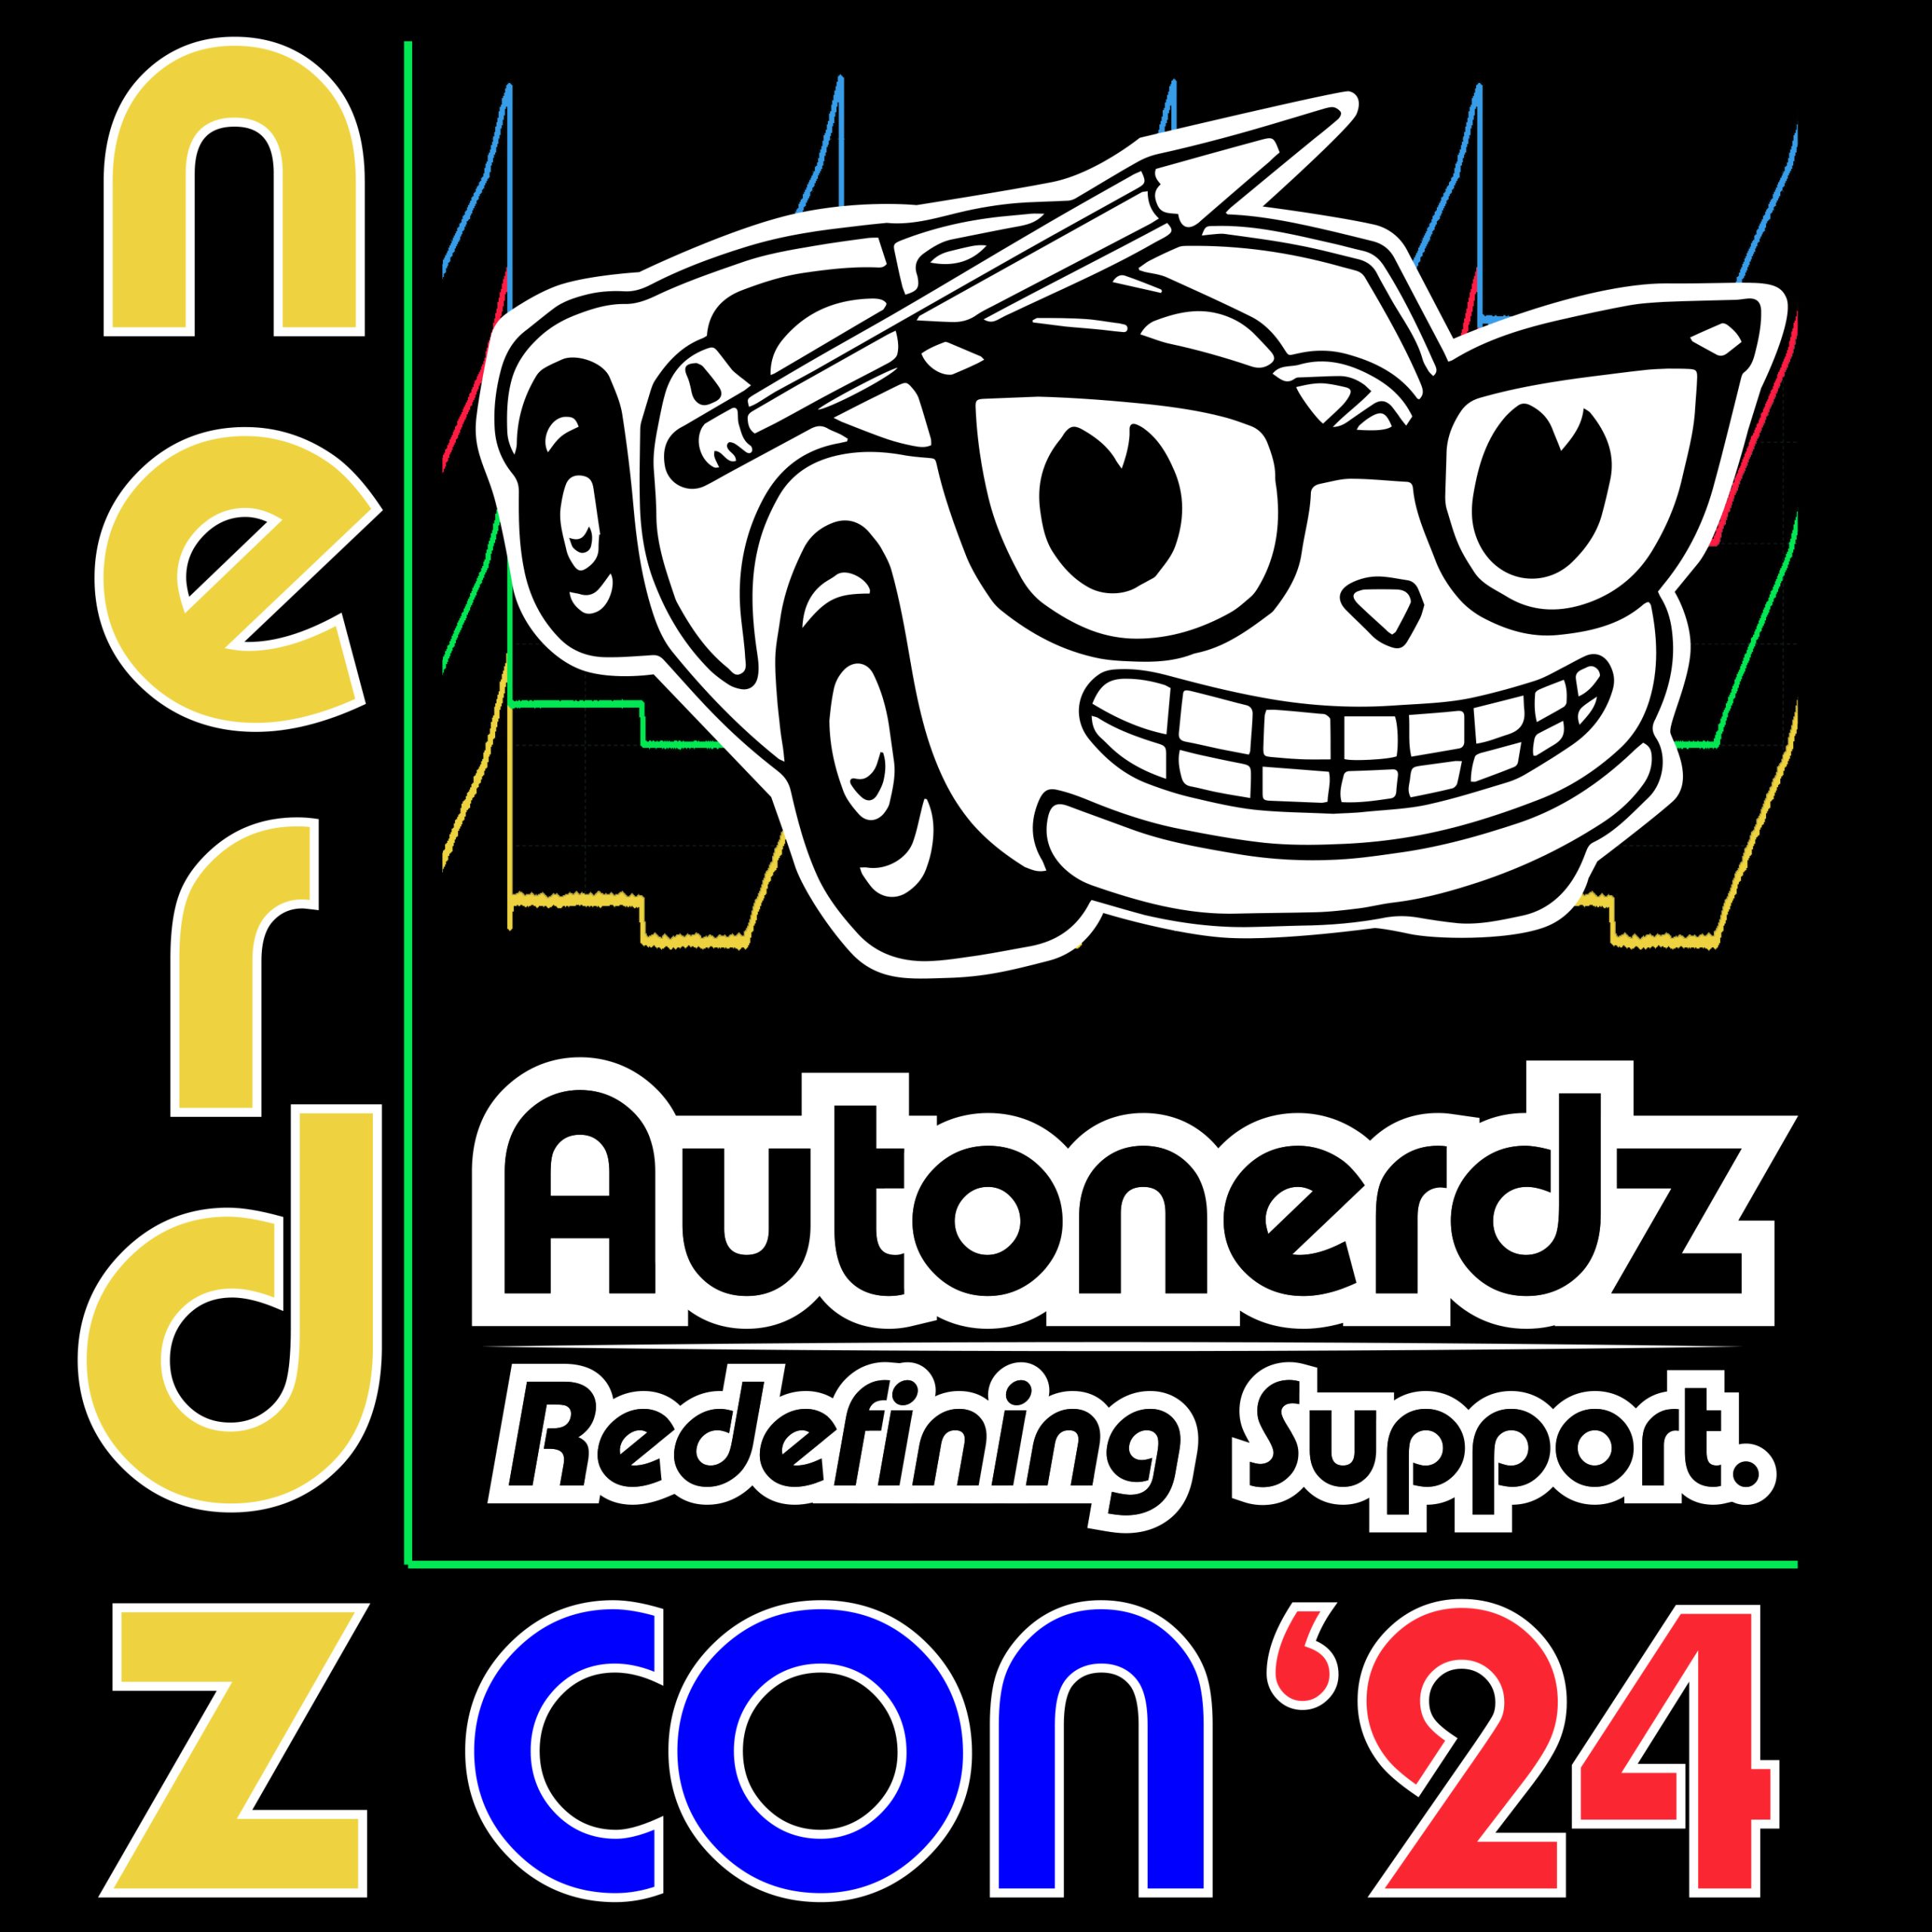 Nerdz-Con '24